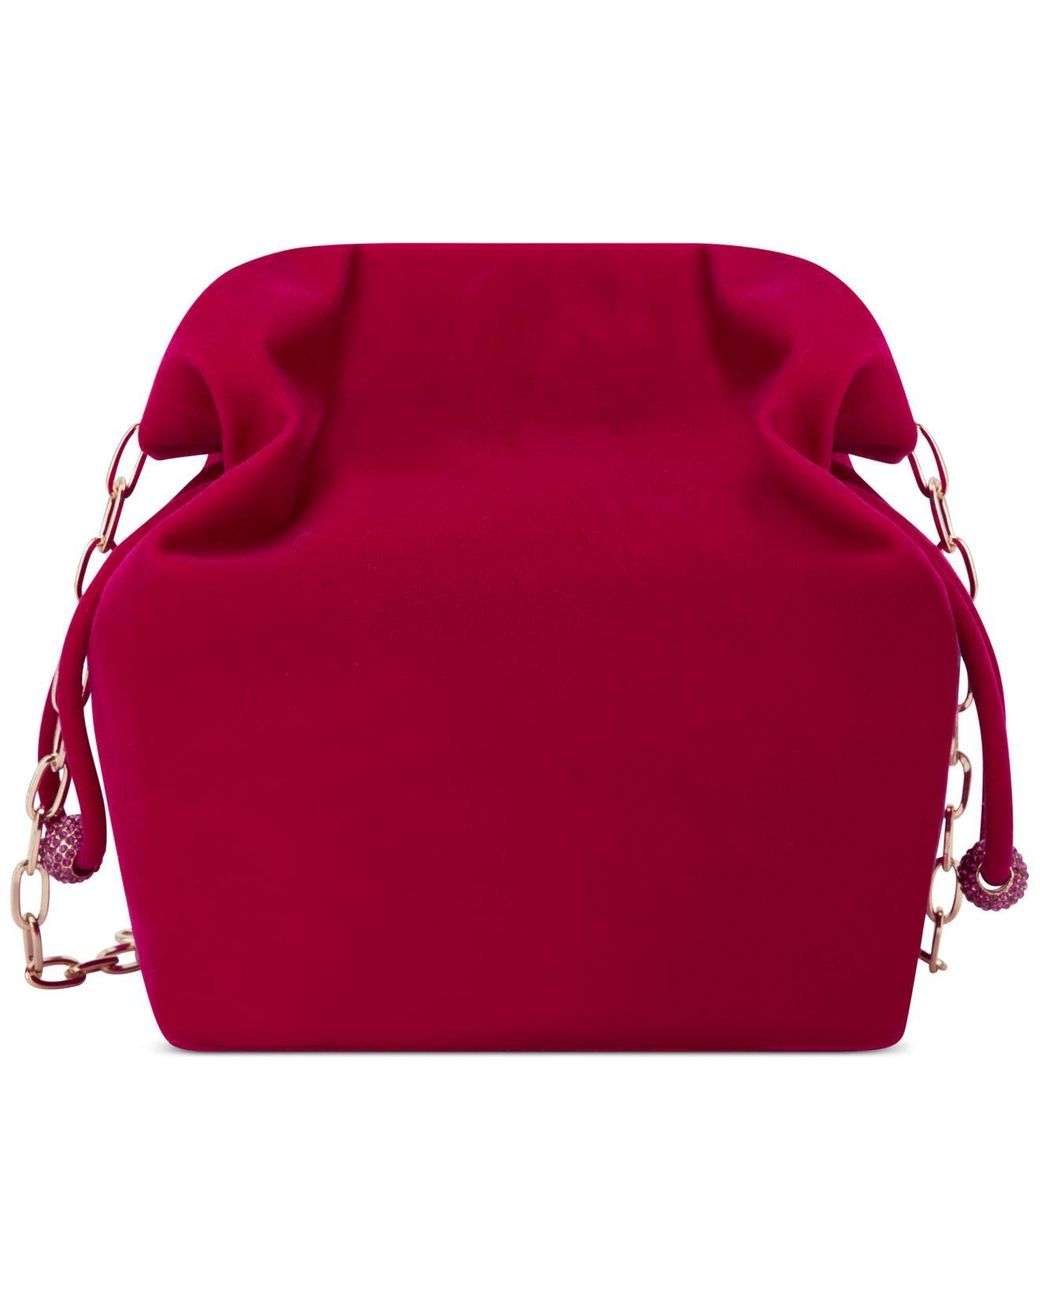 IetpShops Guyana - Mateo Bags for Women - Cream 'Grand' shoulder bag  Michael Michael Kors